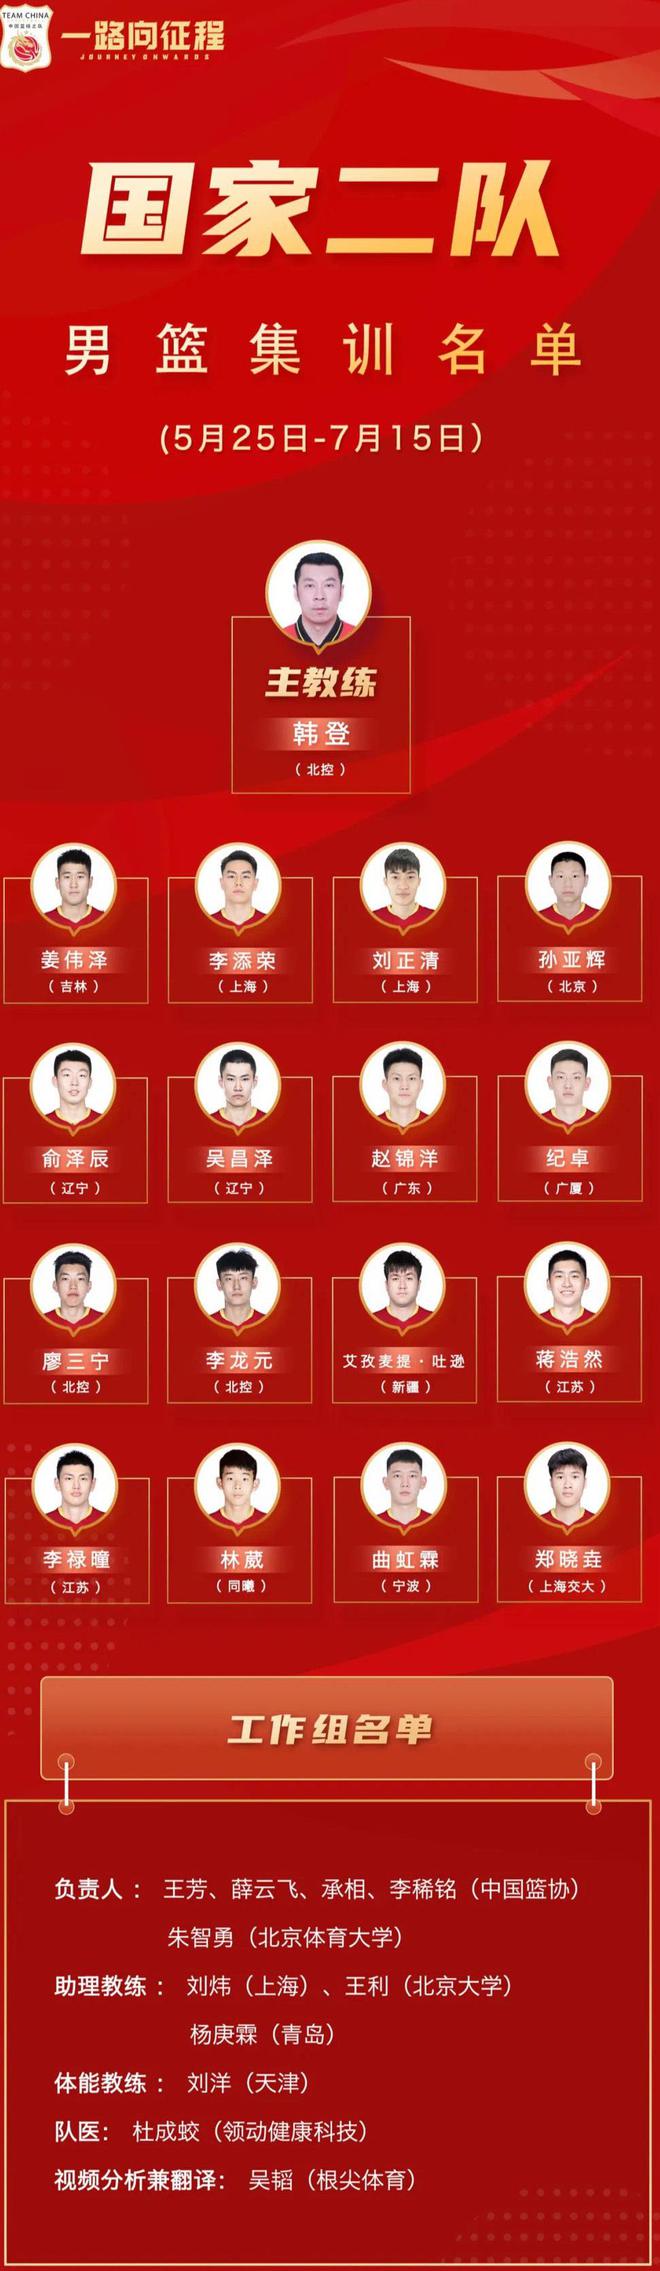 中国足协今天下午公布最新一期国足集训名单是从武磊入选(图)